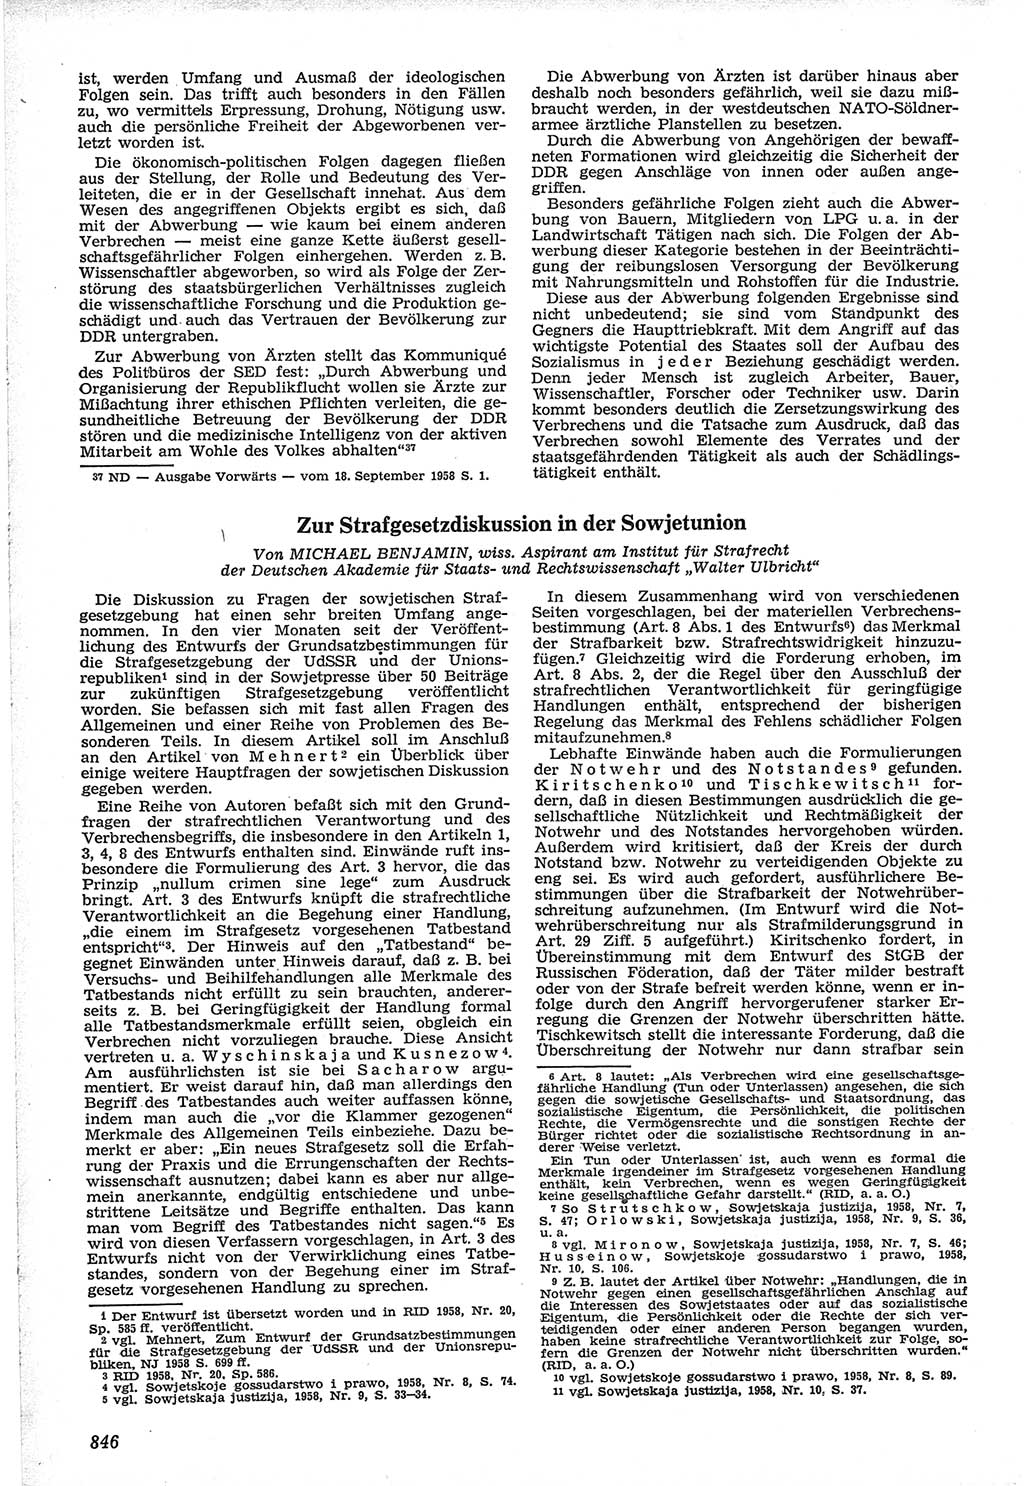 Neue Justiz (NJ), Zeitschrift für Recht und Rechtswissenschaft [Deutsche Demokratische Republik (DDR)], 12. Jahrgang 1958, Seite 846 (NJ DDR 1958, S. 846)